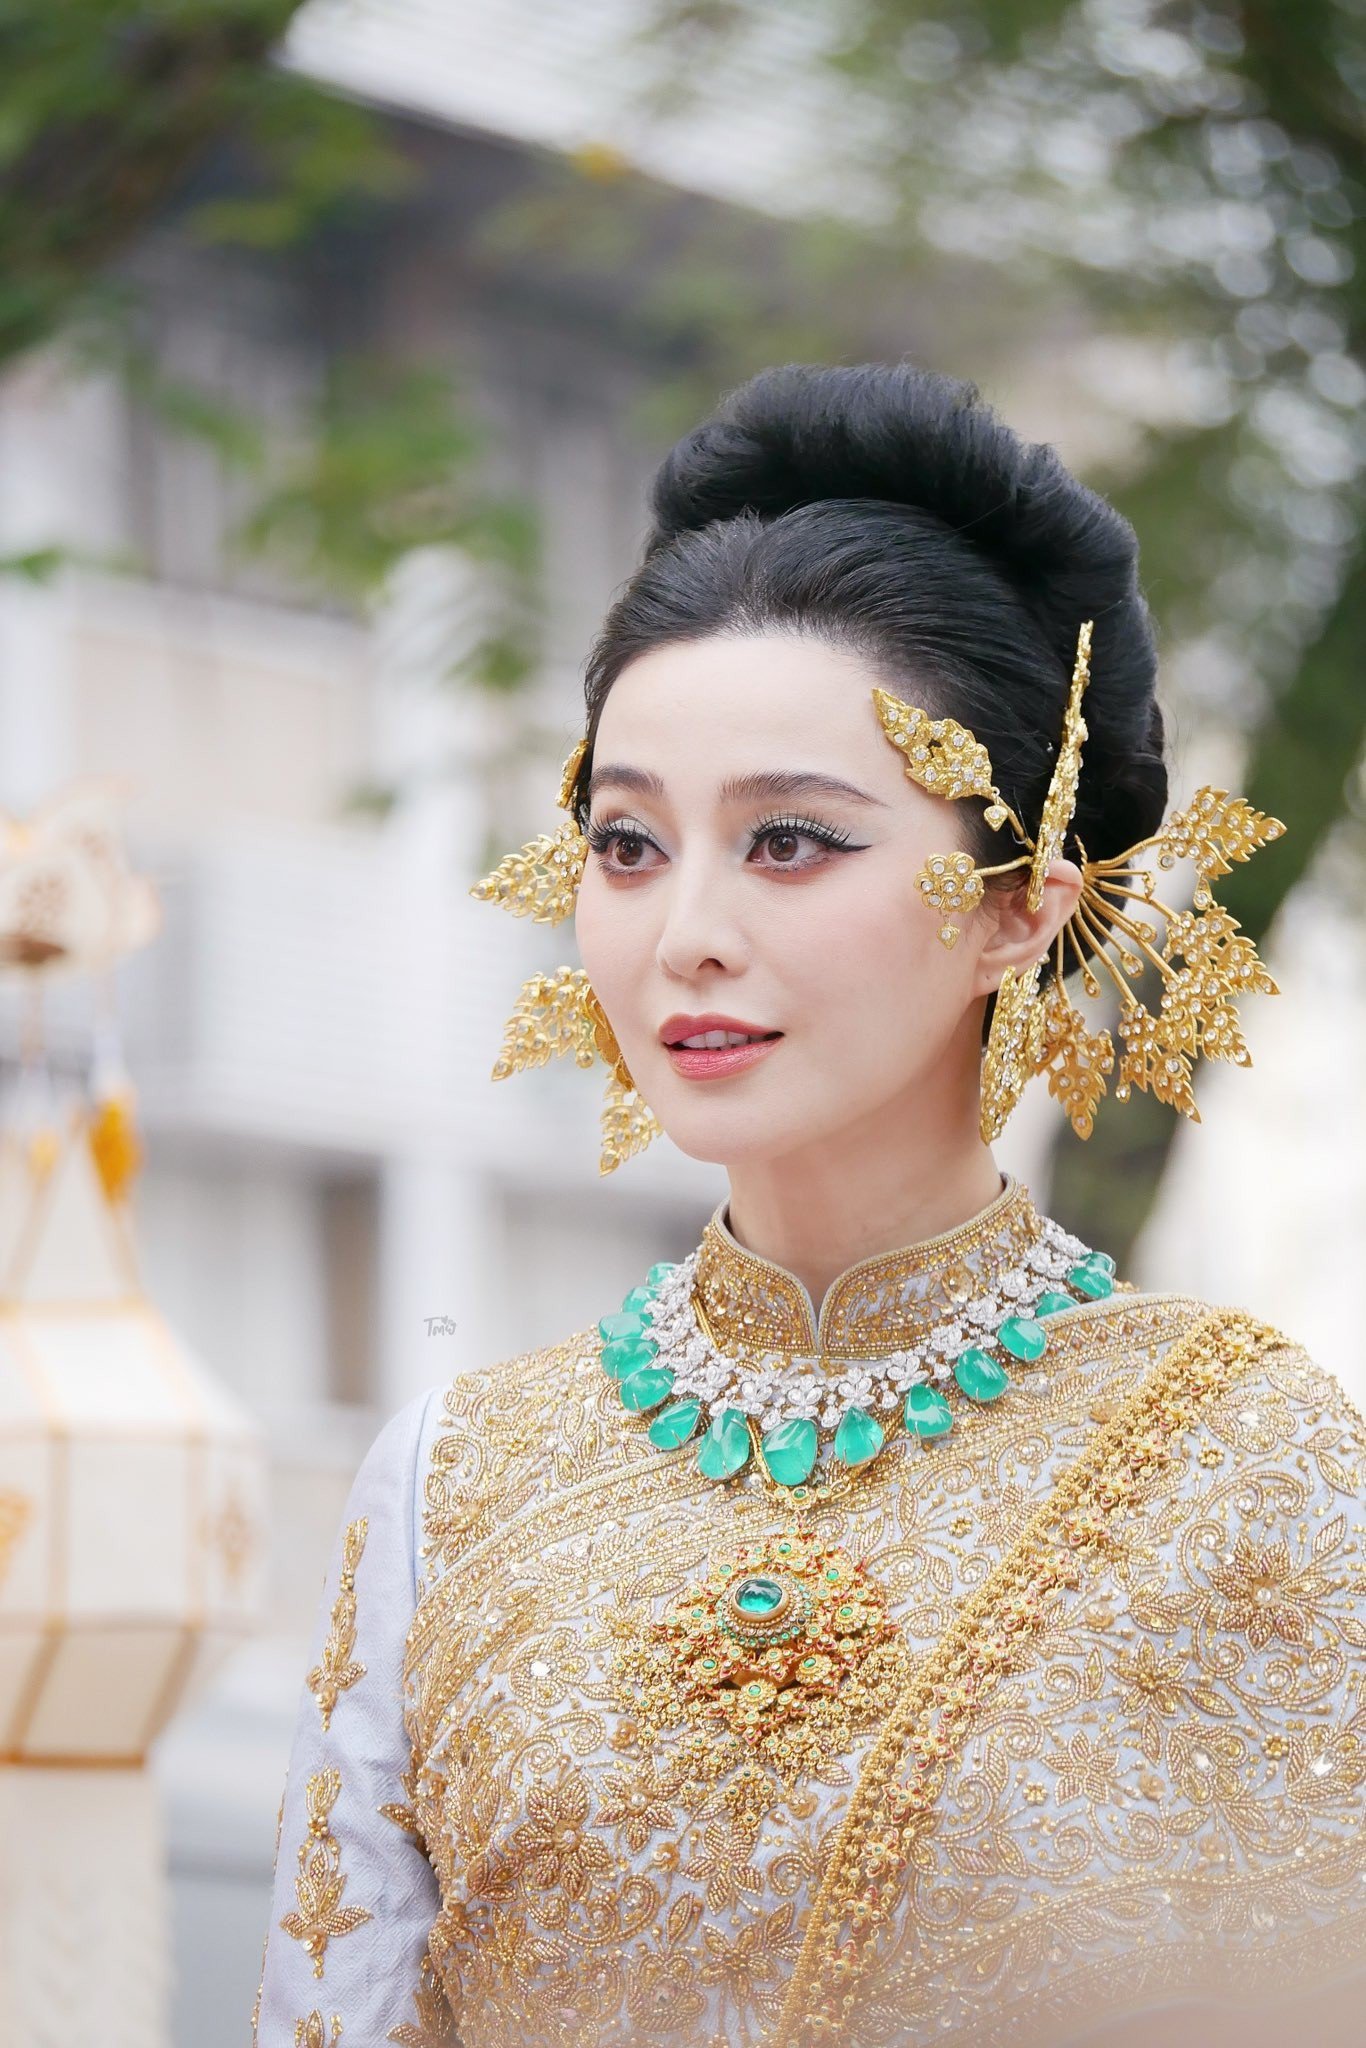 Diện trang phục truyền thống Thái Lan, nữ diễn viên đi qua các con phố ở thủ đô, thu hút mọi ánh nhìn của hàng nghìn du khách và người dân địa phương. Ảnh: Twitter.